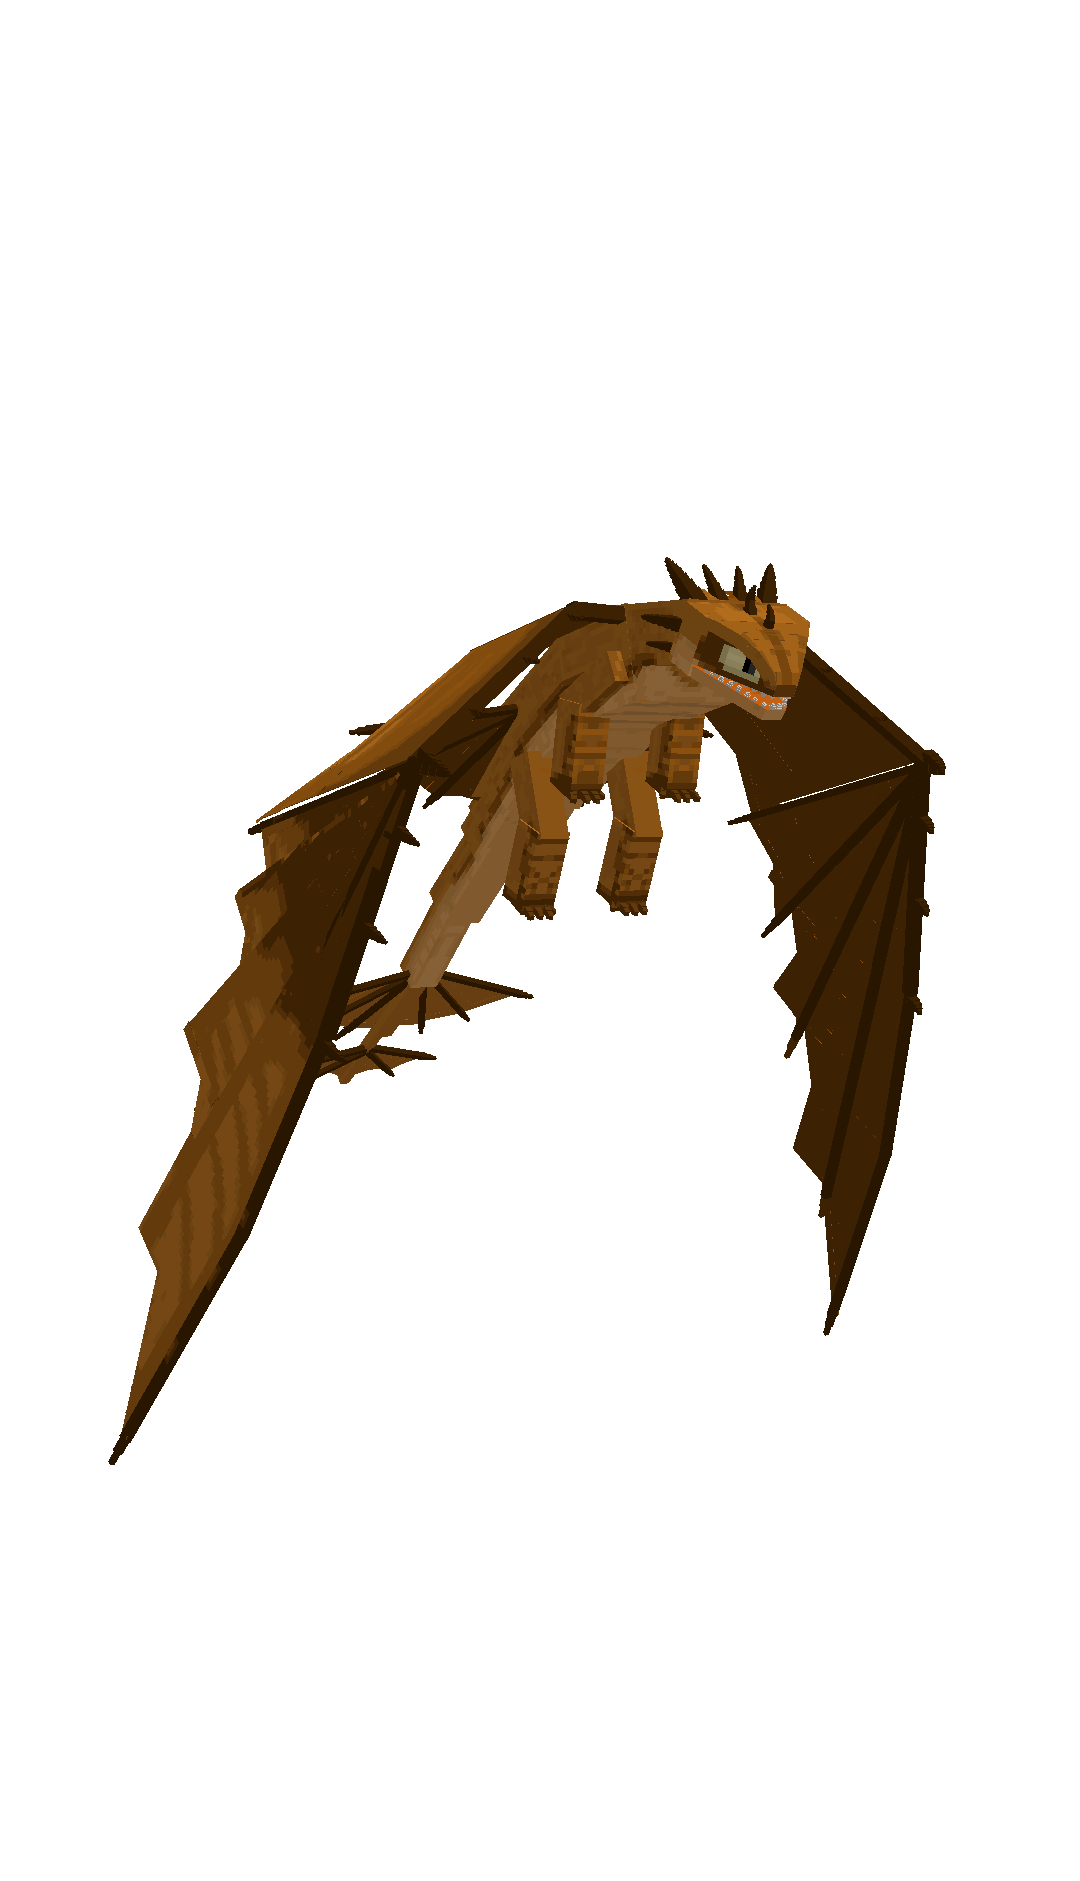 Желтый дракон машет крыльями